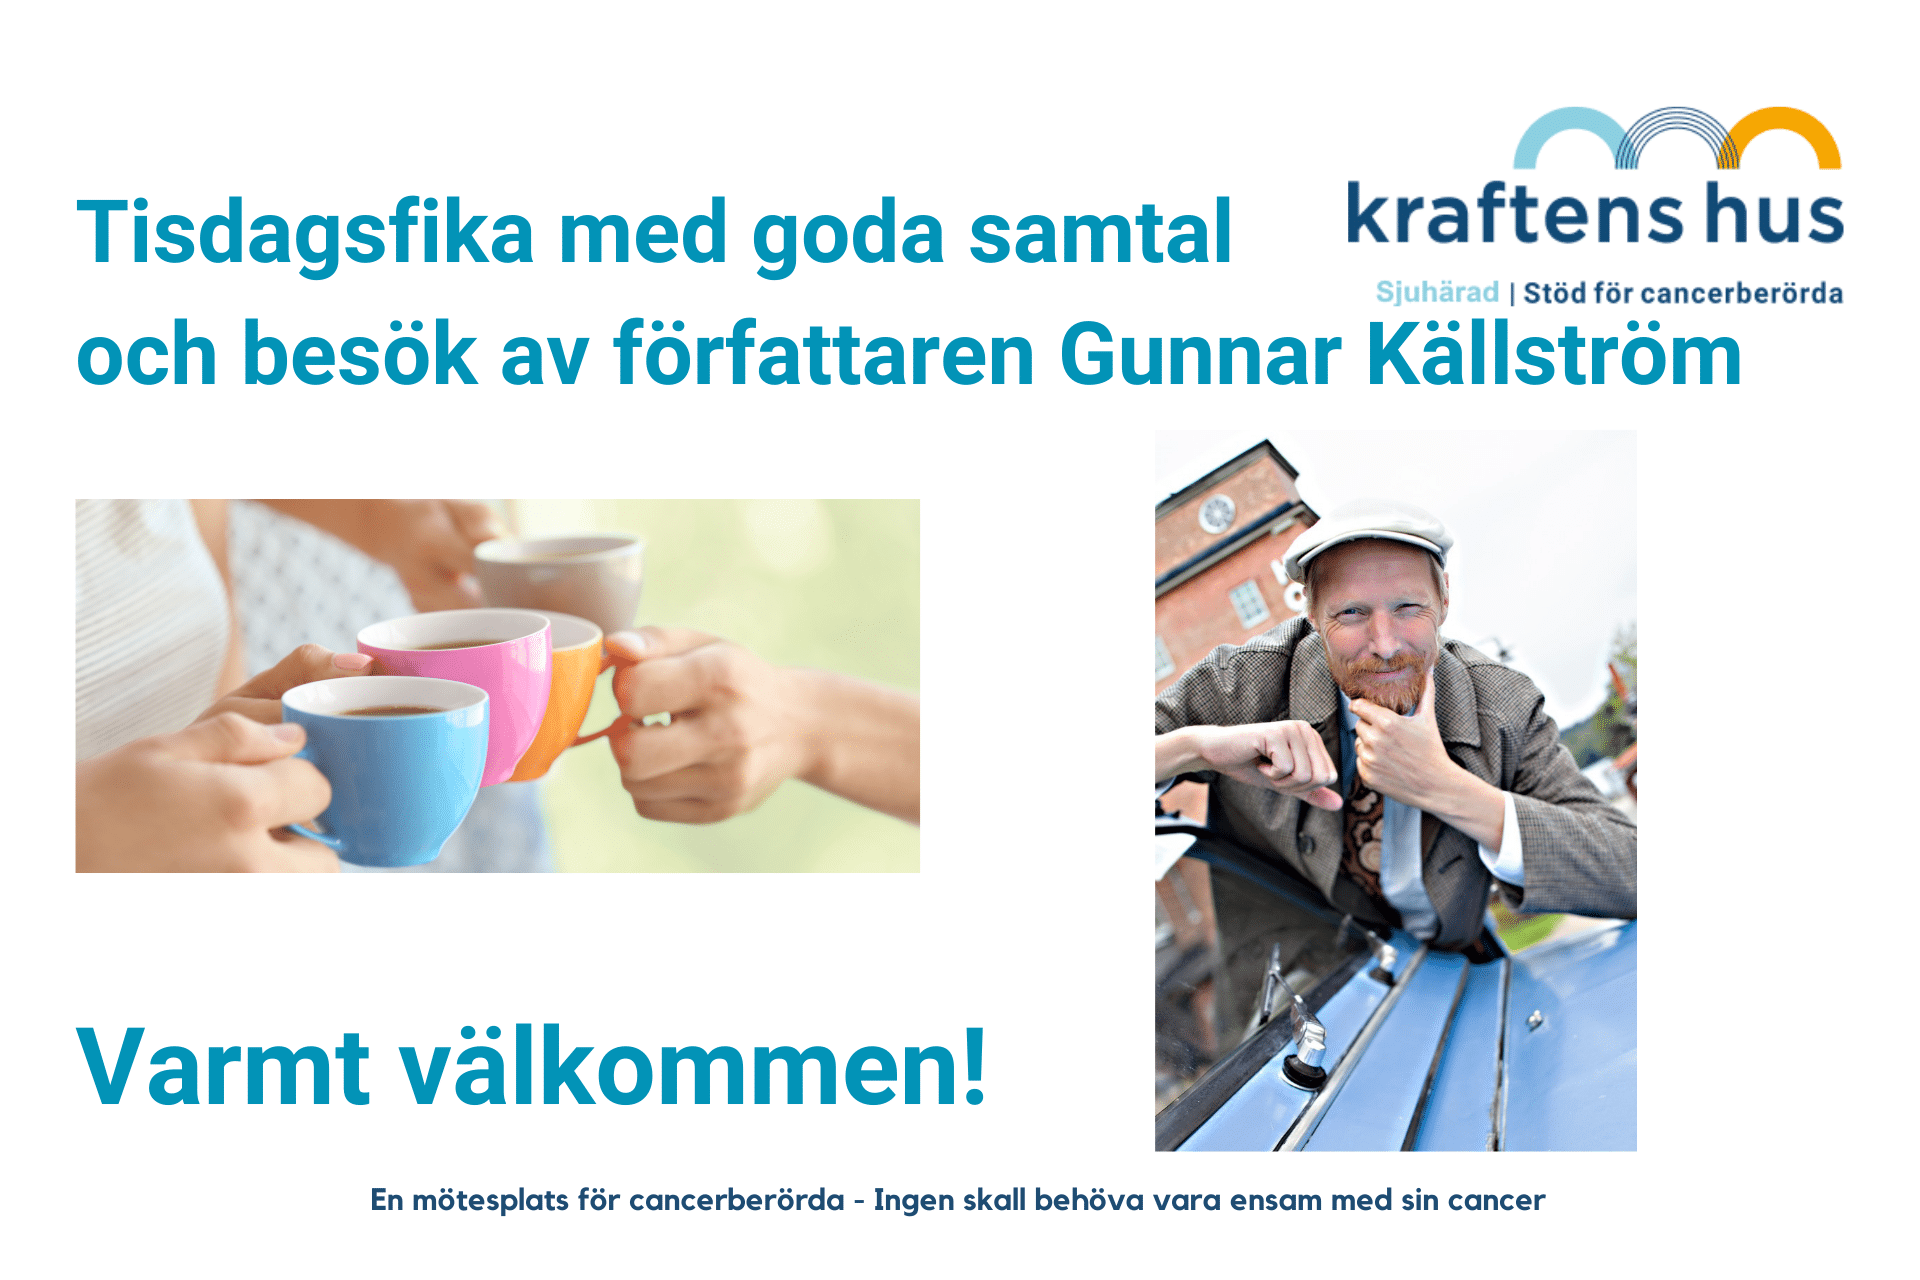 Tisdagsfika med goda samtal och besök av författaren Gunnar Källström på Kraftens hus Sjuhärad